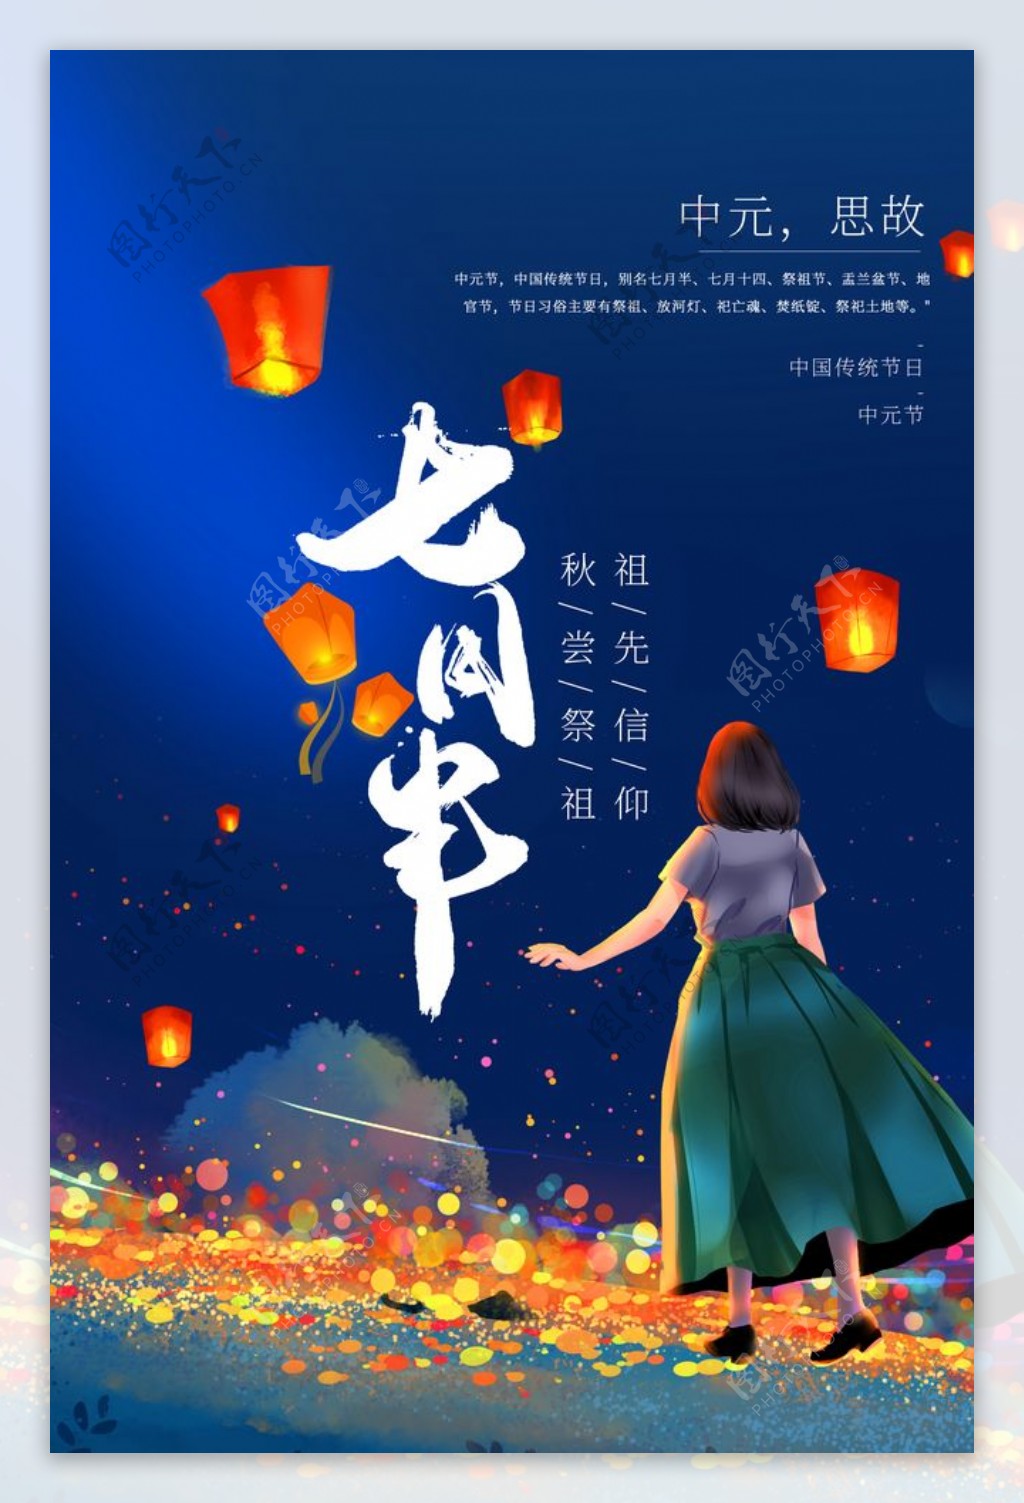 中元节传统节日活动宣传海报